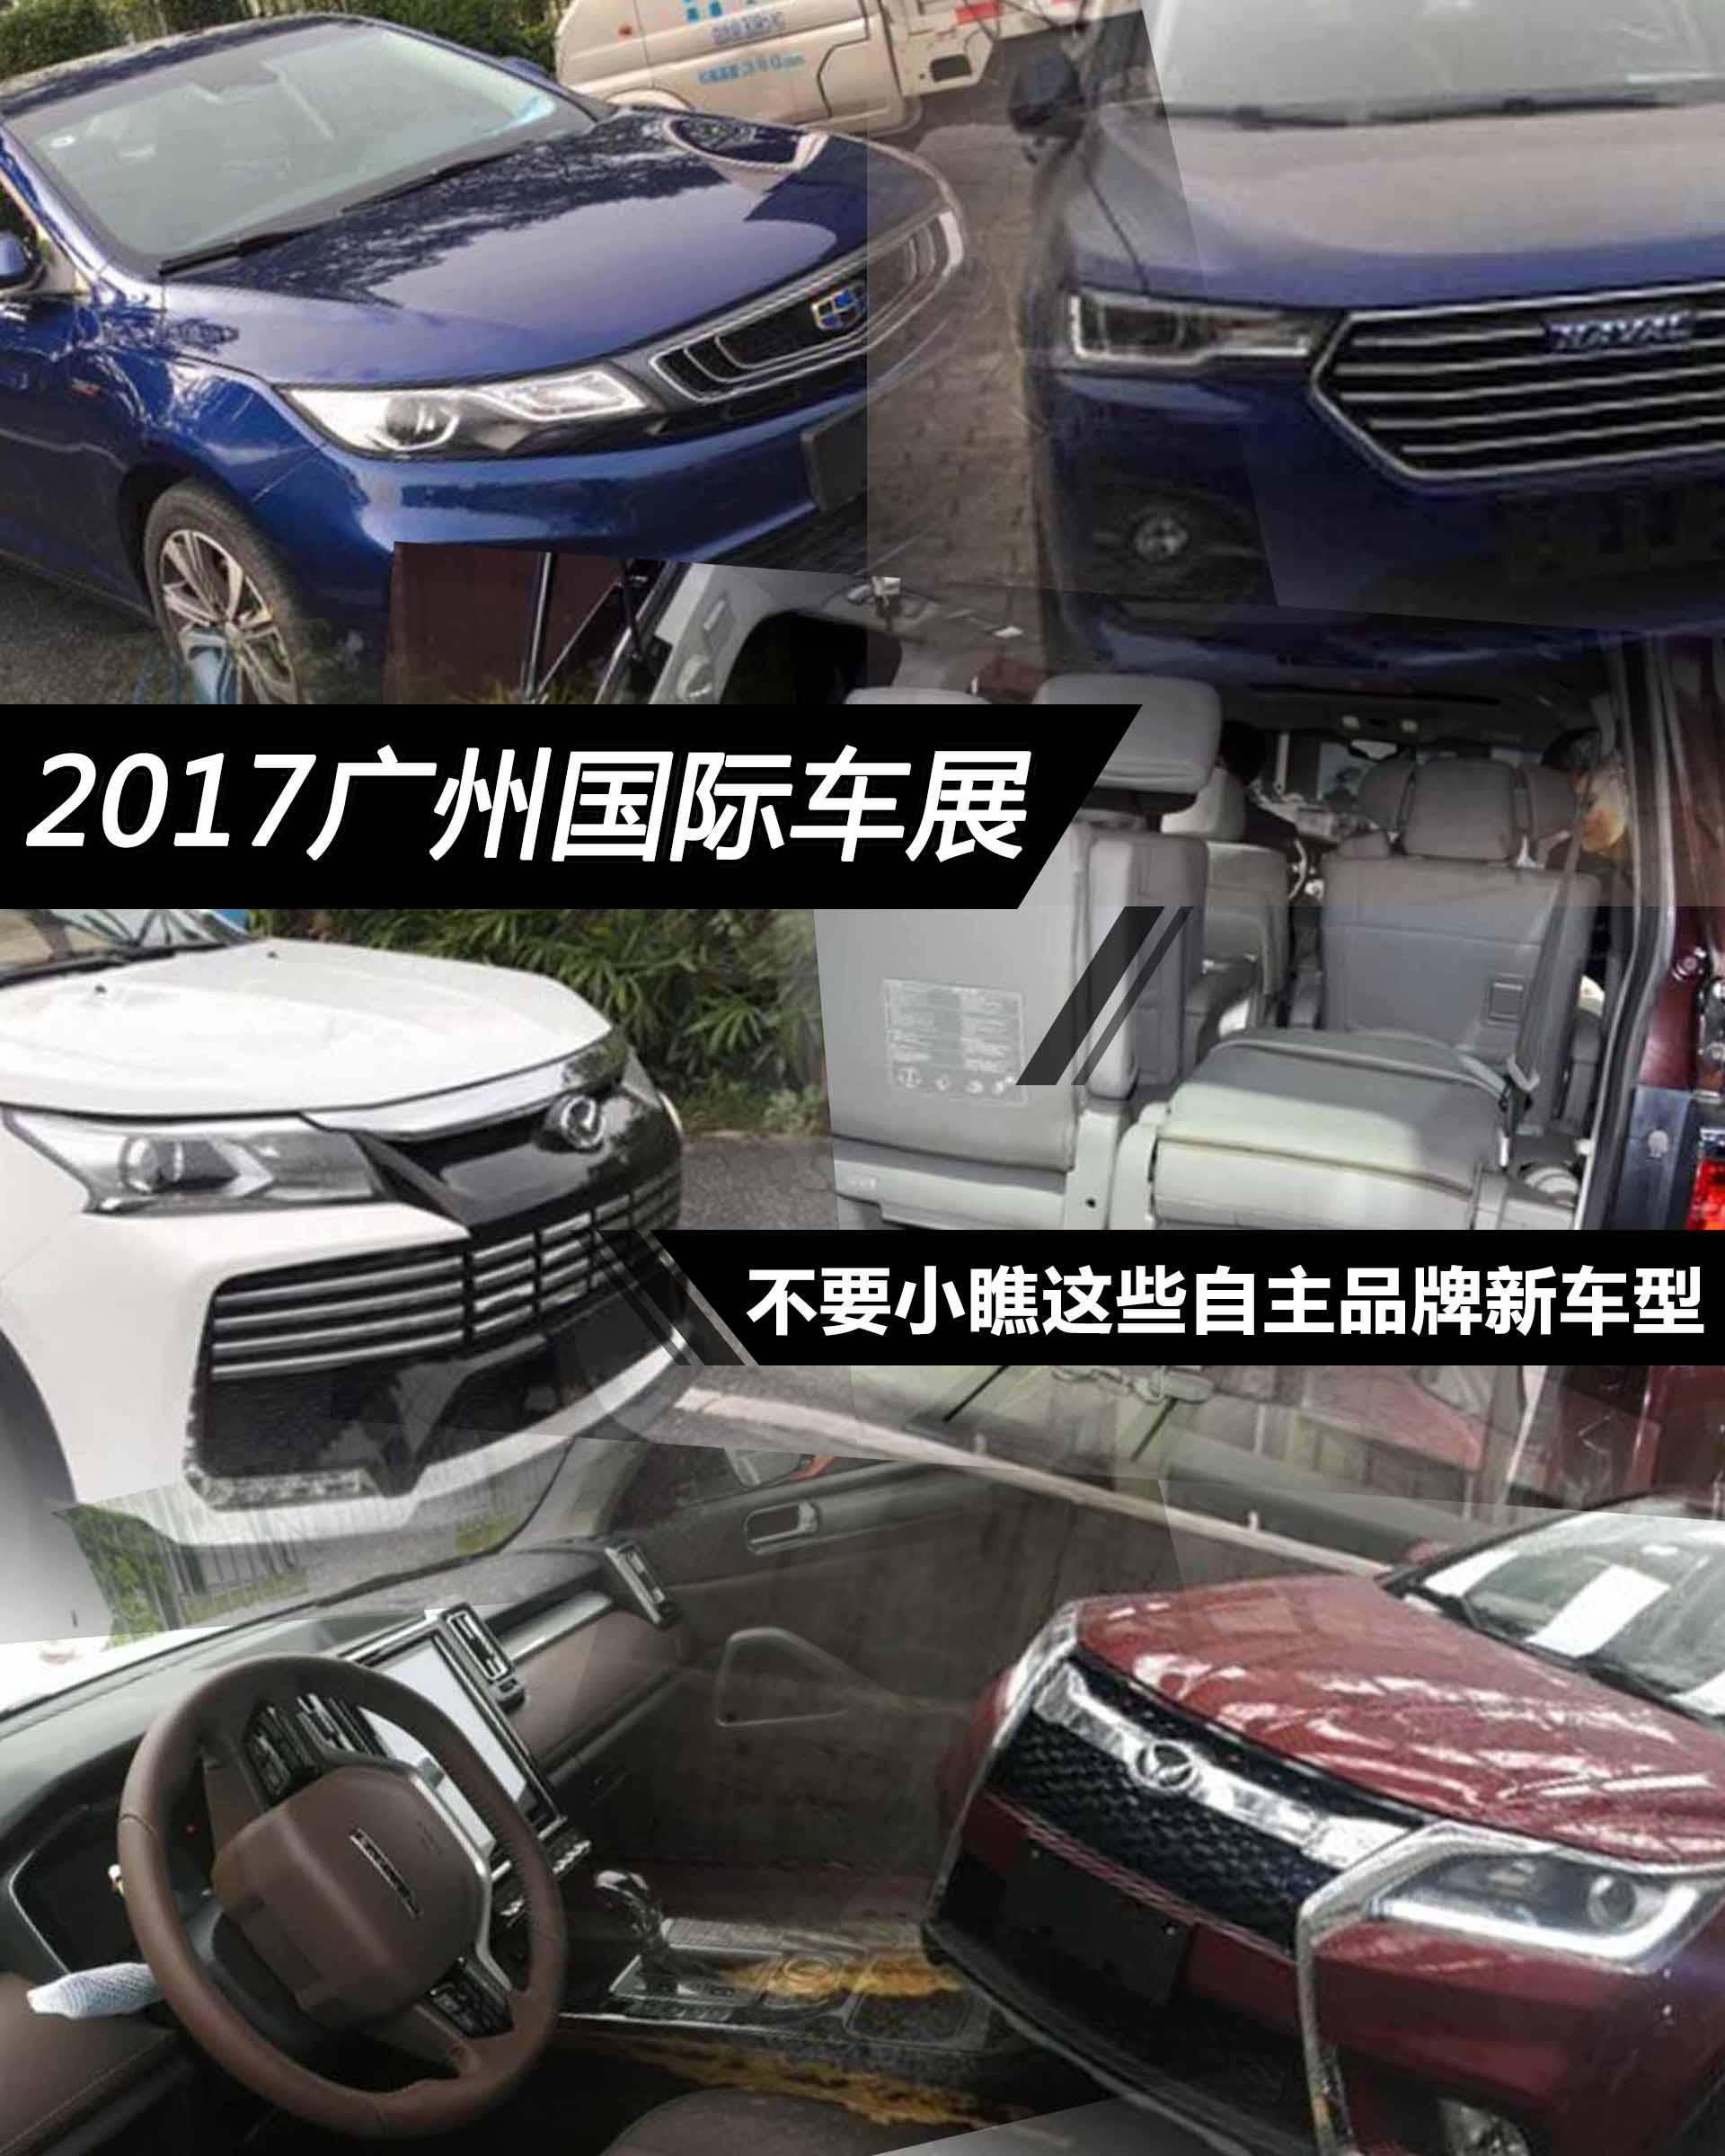 2017广州车展 不要小瞧这些自主品牌新车型